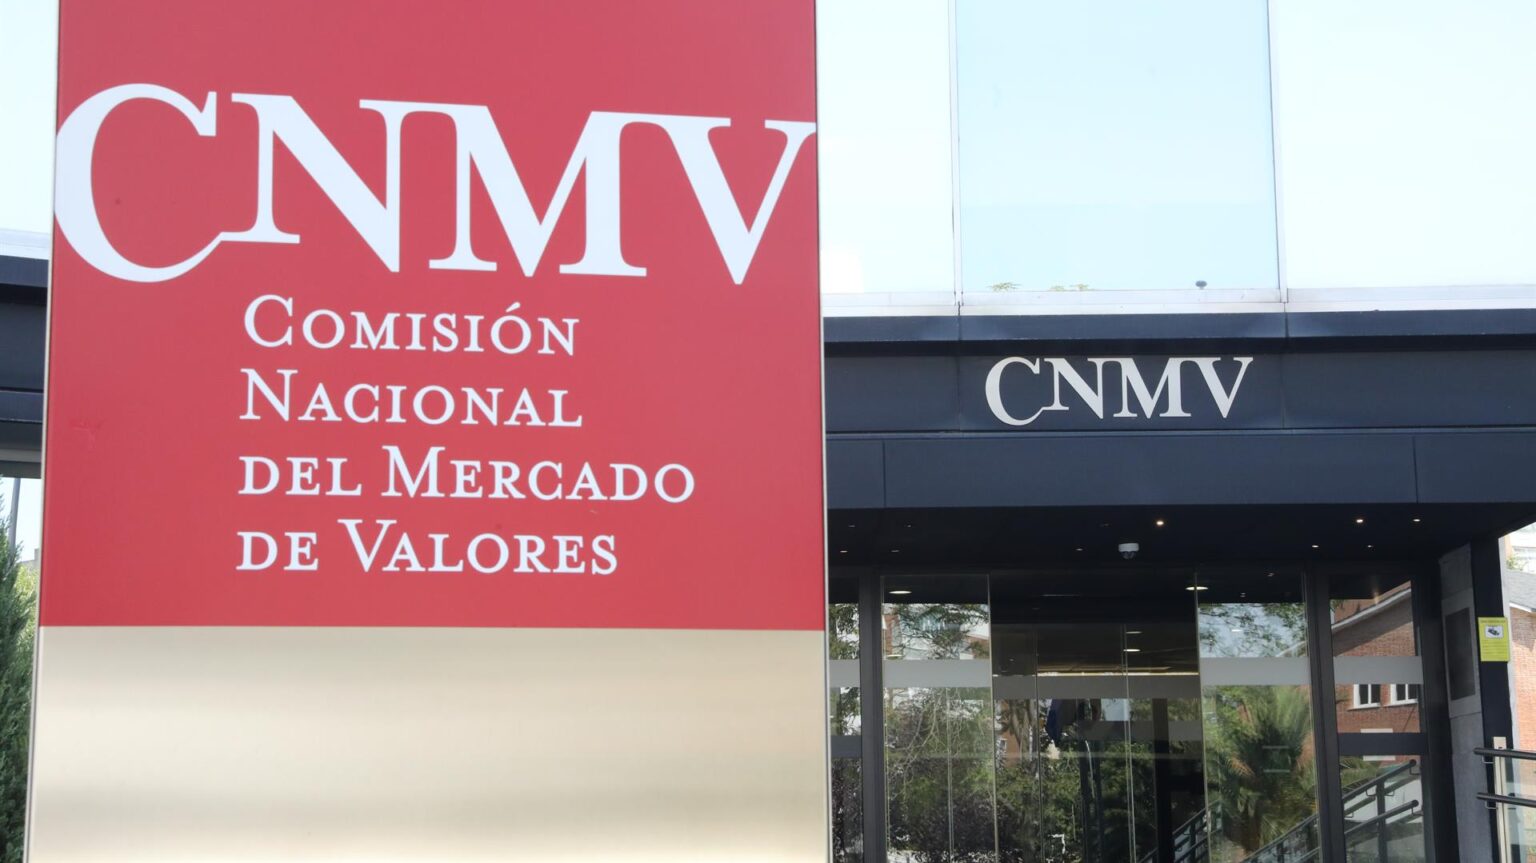 La CNMV se reestructura para incluir funciones de finanzas sostenibles y criptoactivos